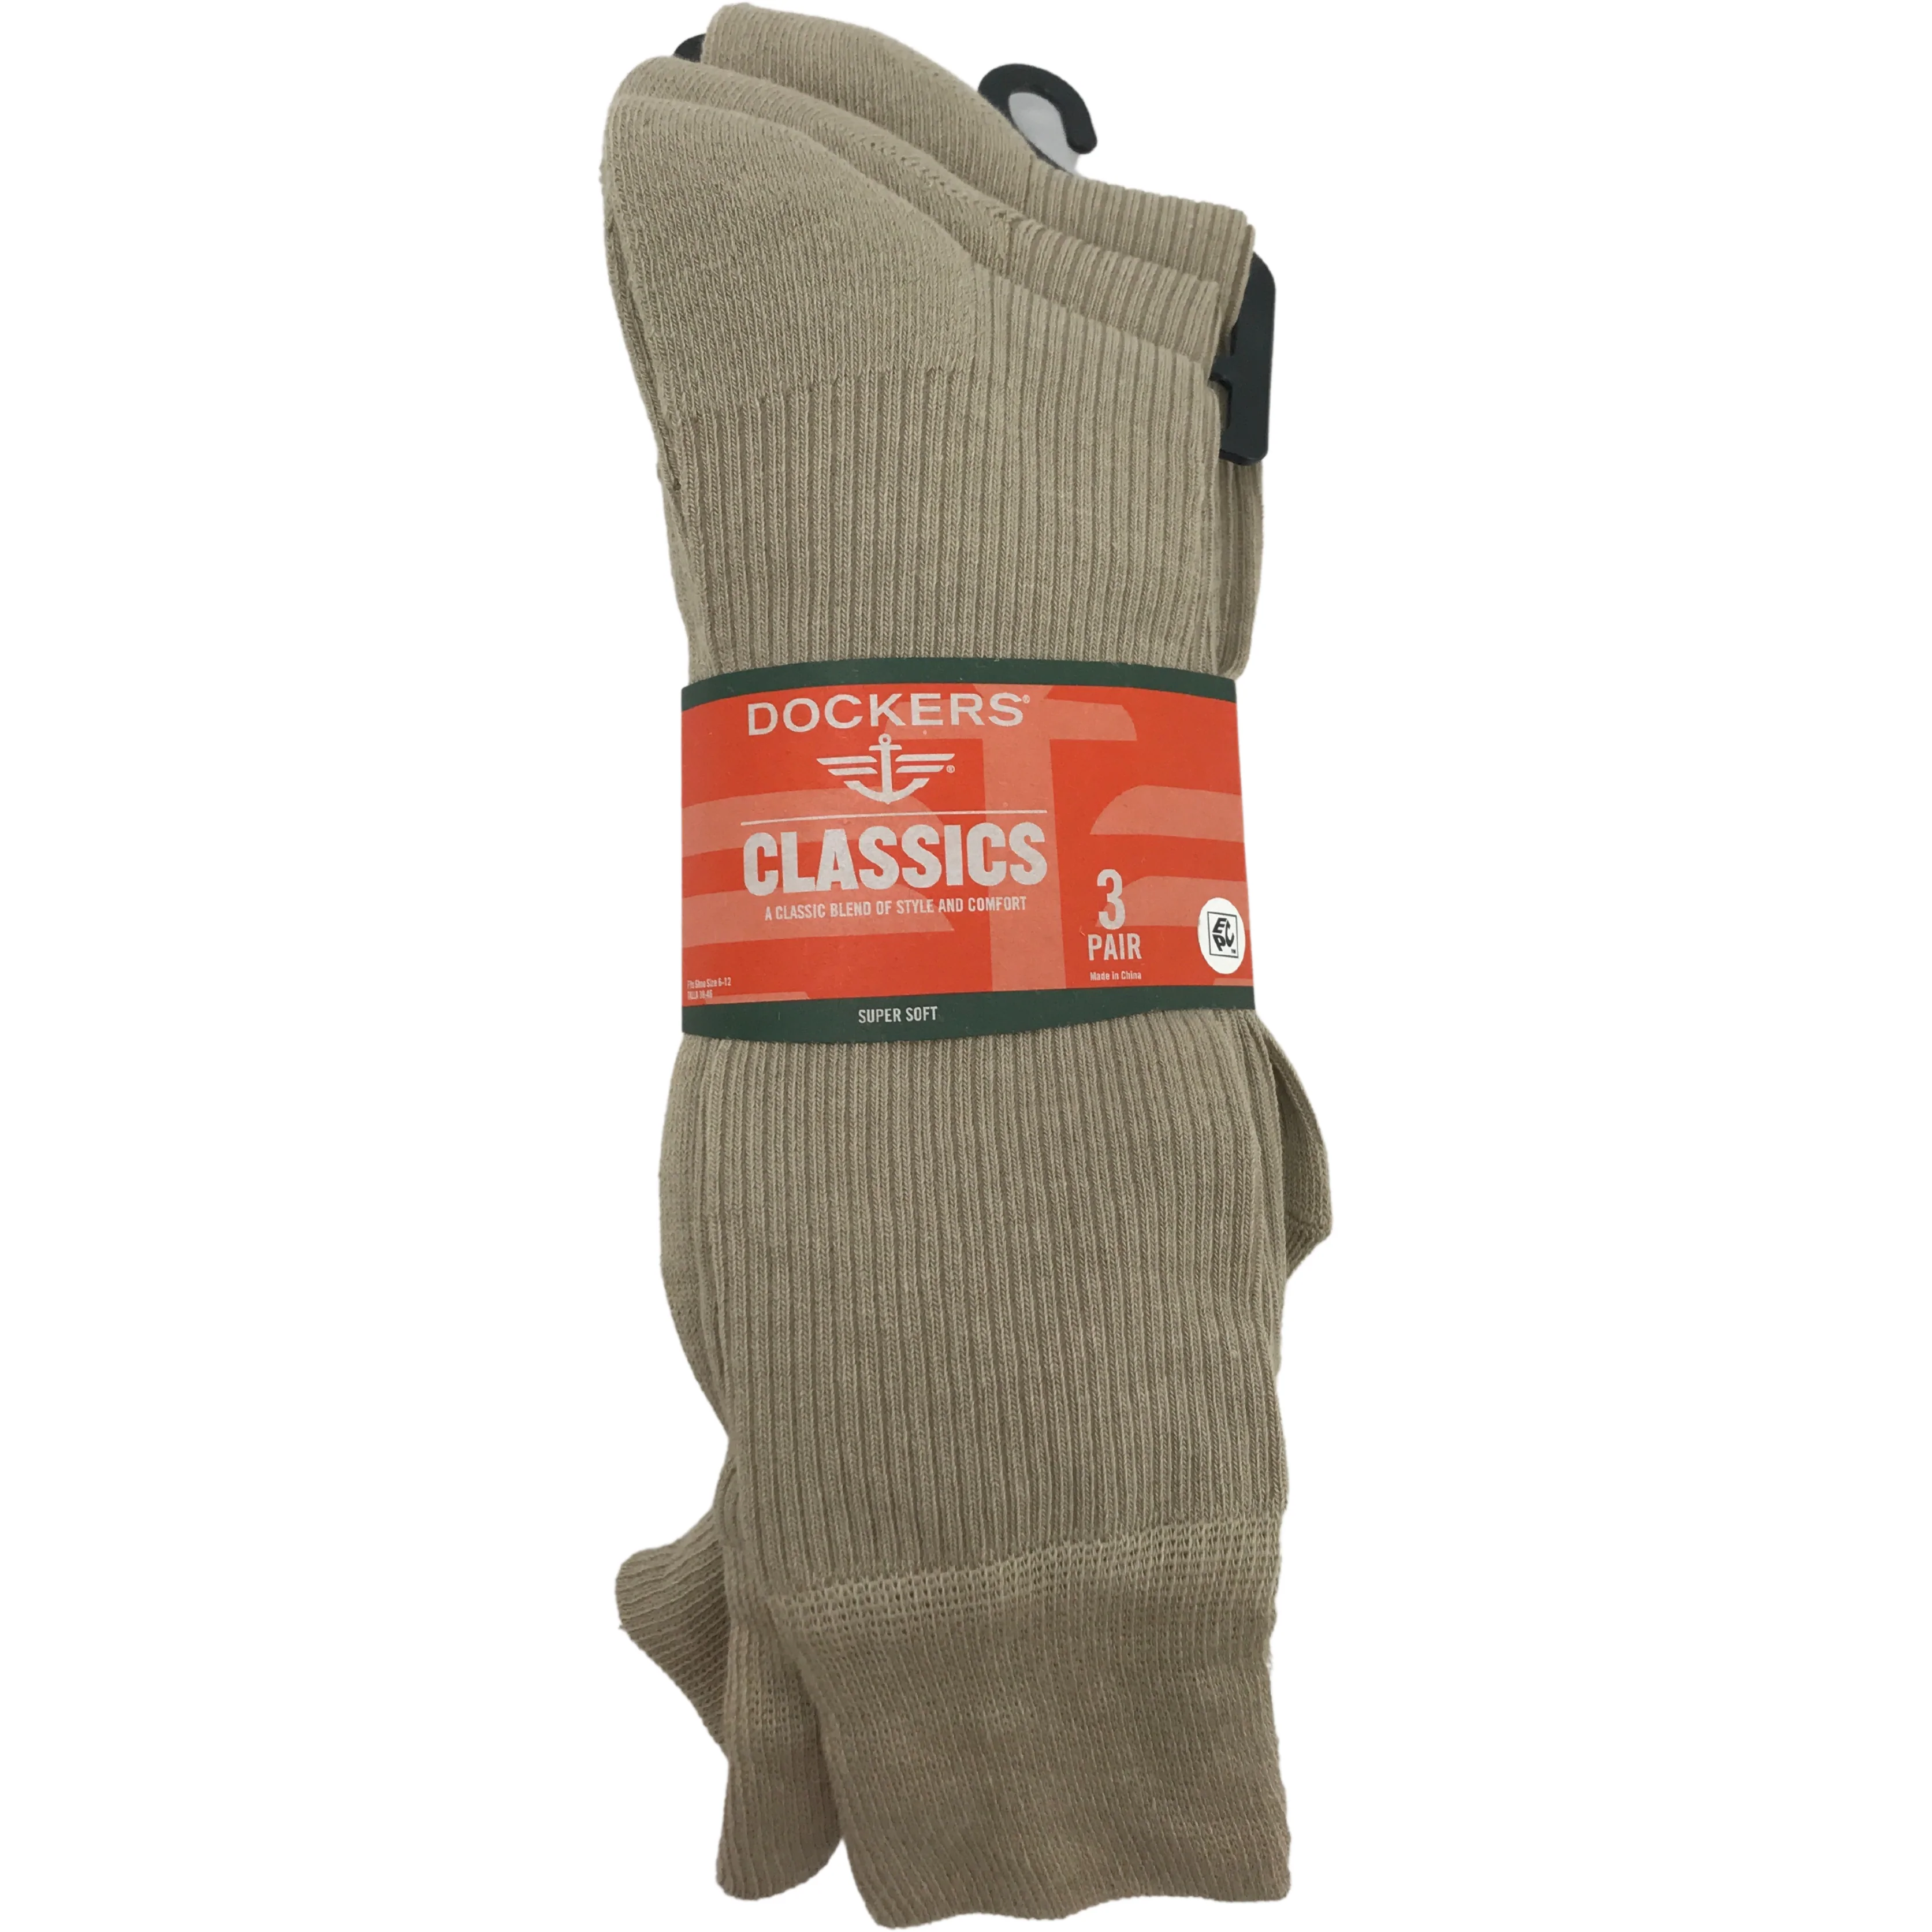 Dockers Men's Socks / Mid Calf Sock / Beige / 3 Pack / Dress Sock